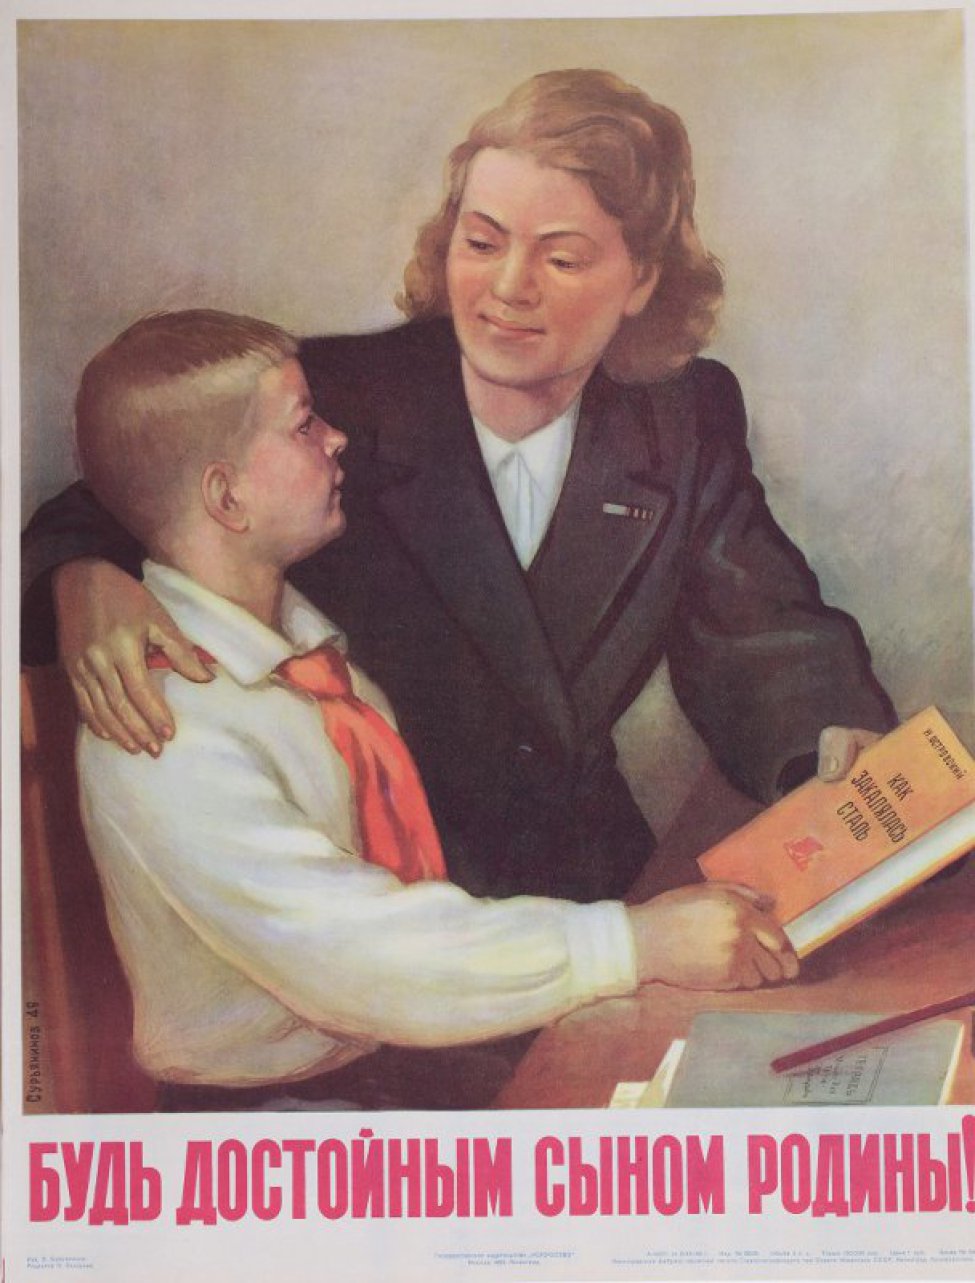 Изображены сидящие за столом пионер и молодая женщина, которая правую руку положила на плечо мальчику, левой передает ему книгу Н. Островского "Как закалялась сталь".